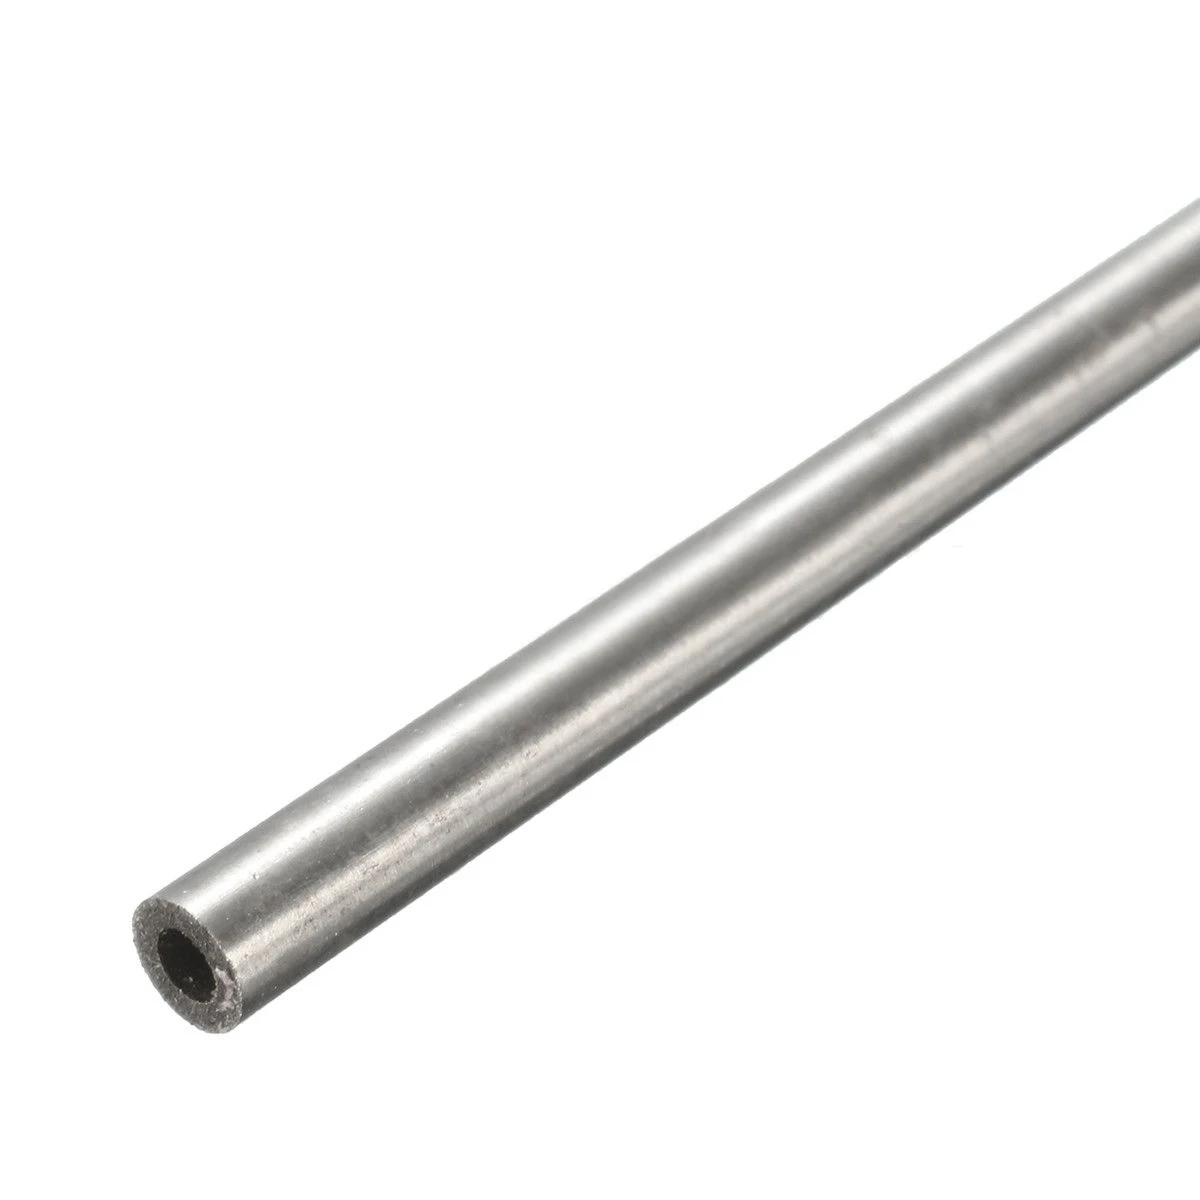 1 шт. новая бесшовная Серебряная капиллярная круглая трубка из нержавеющей стали OD 4 мм 2 мм ID длина 250 мм